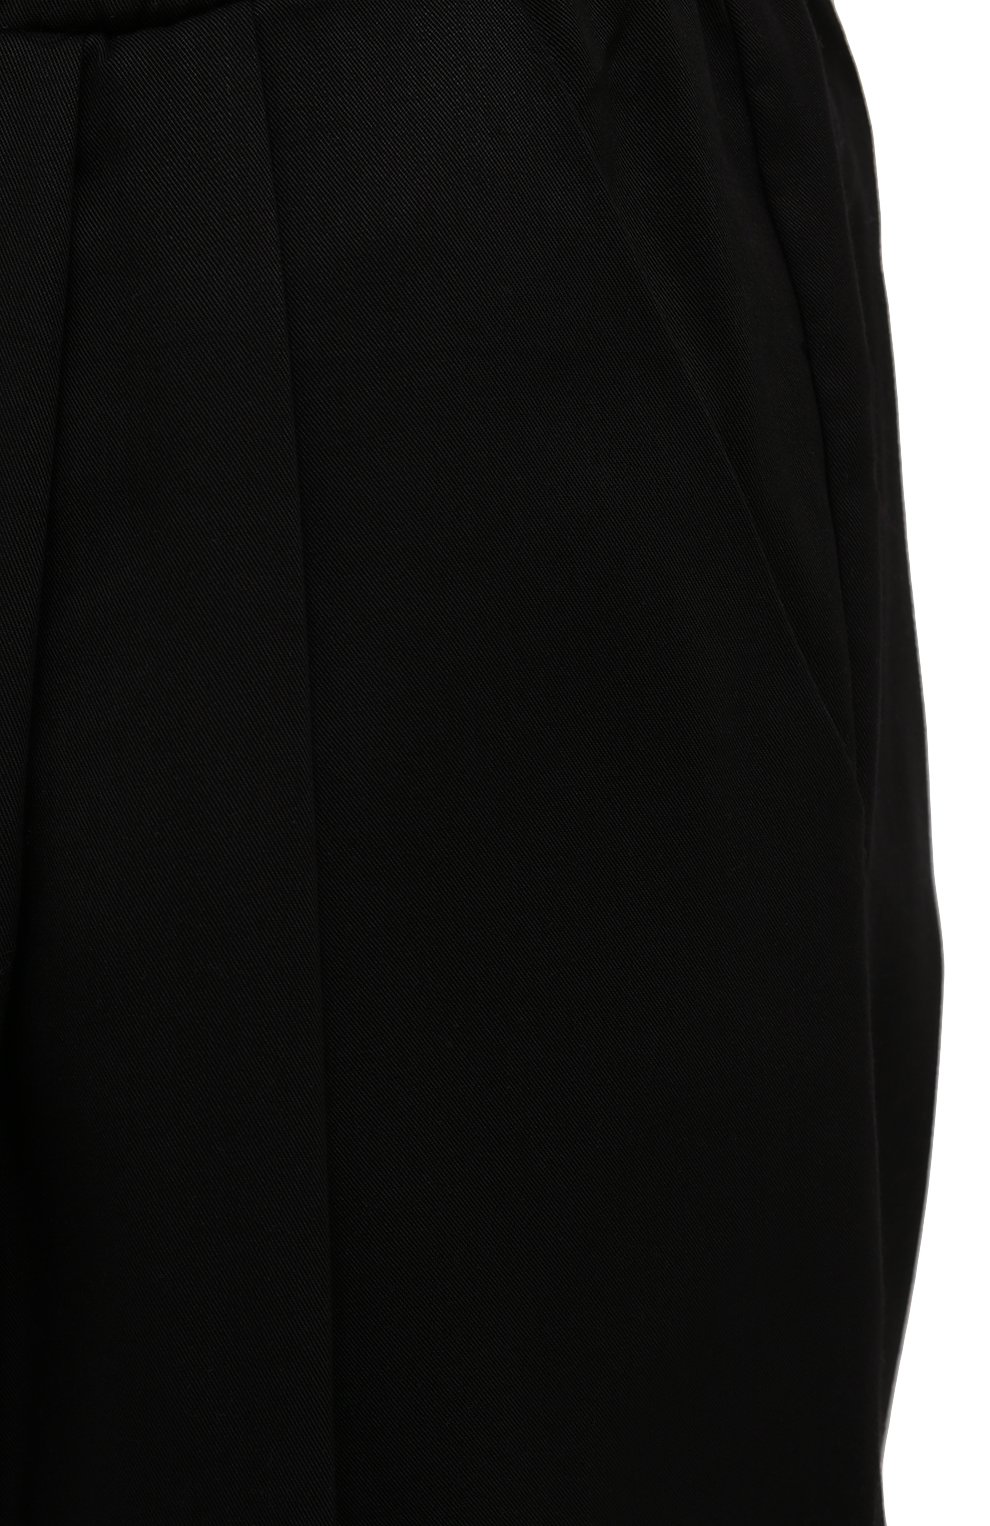 Мужские брюки LIMITATO черного цвета, арт. 0CEANS/L0UNGE PANTS | Фото 5 (Длина (брюки, джинсы): Стандартные; Случай: Повседневный; Стили: Минимализм; Материал внешний: Растительное волокно)